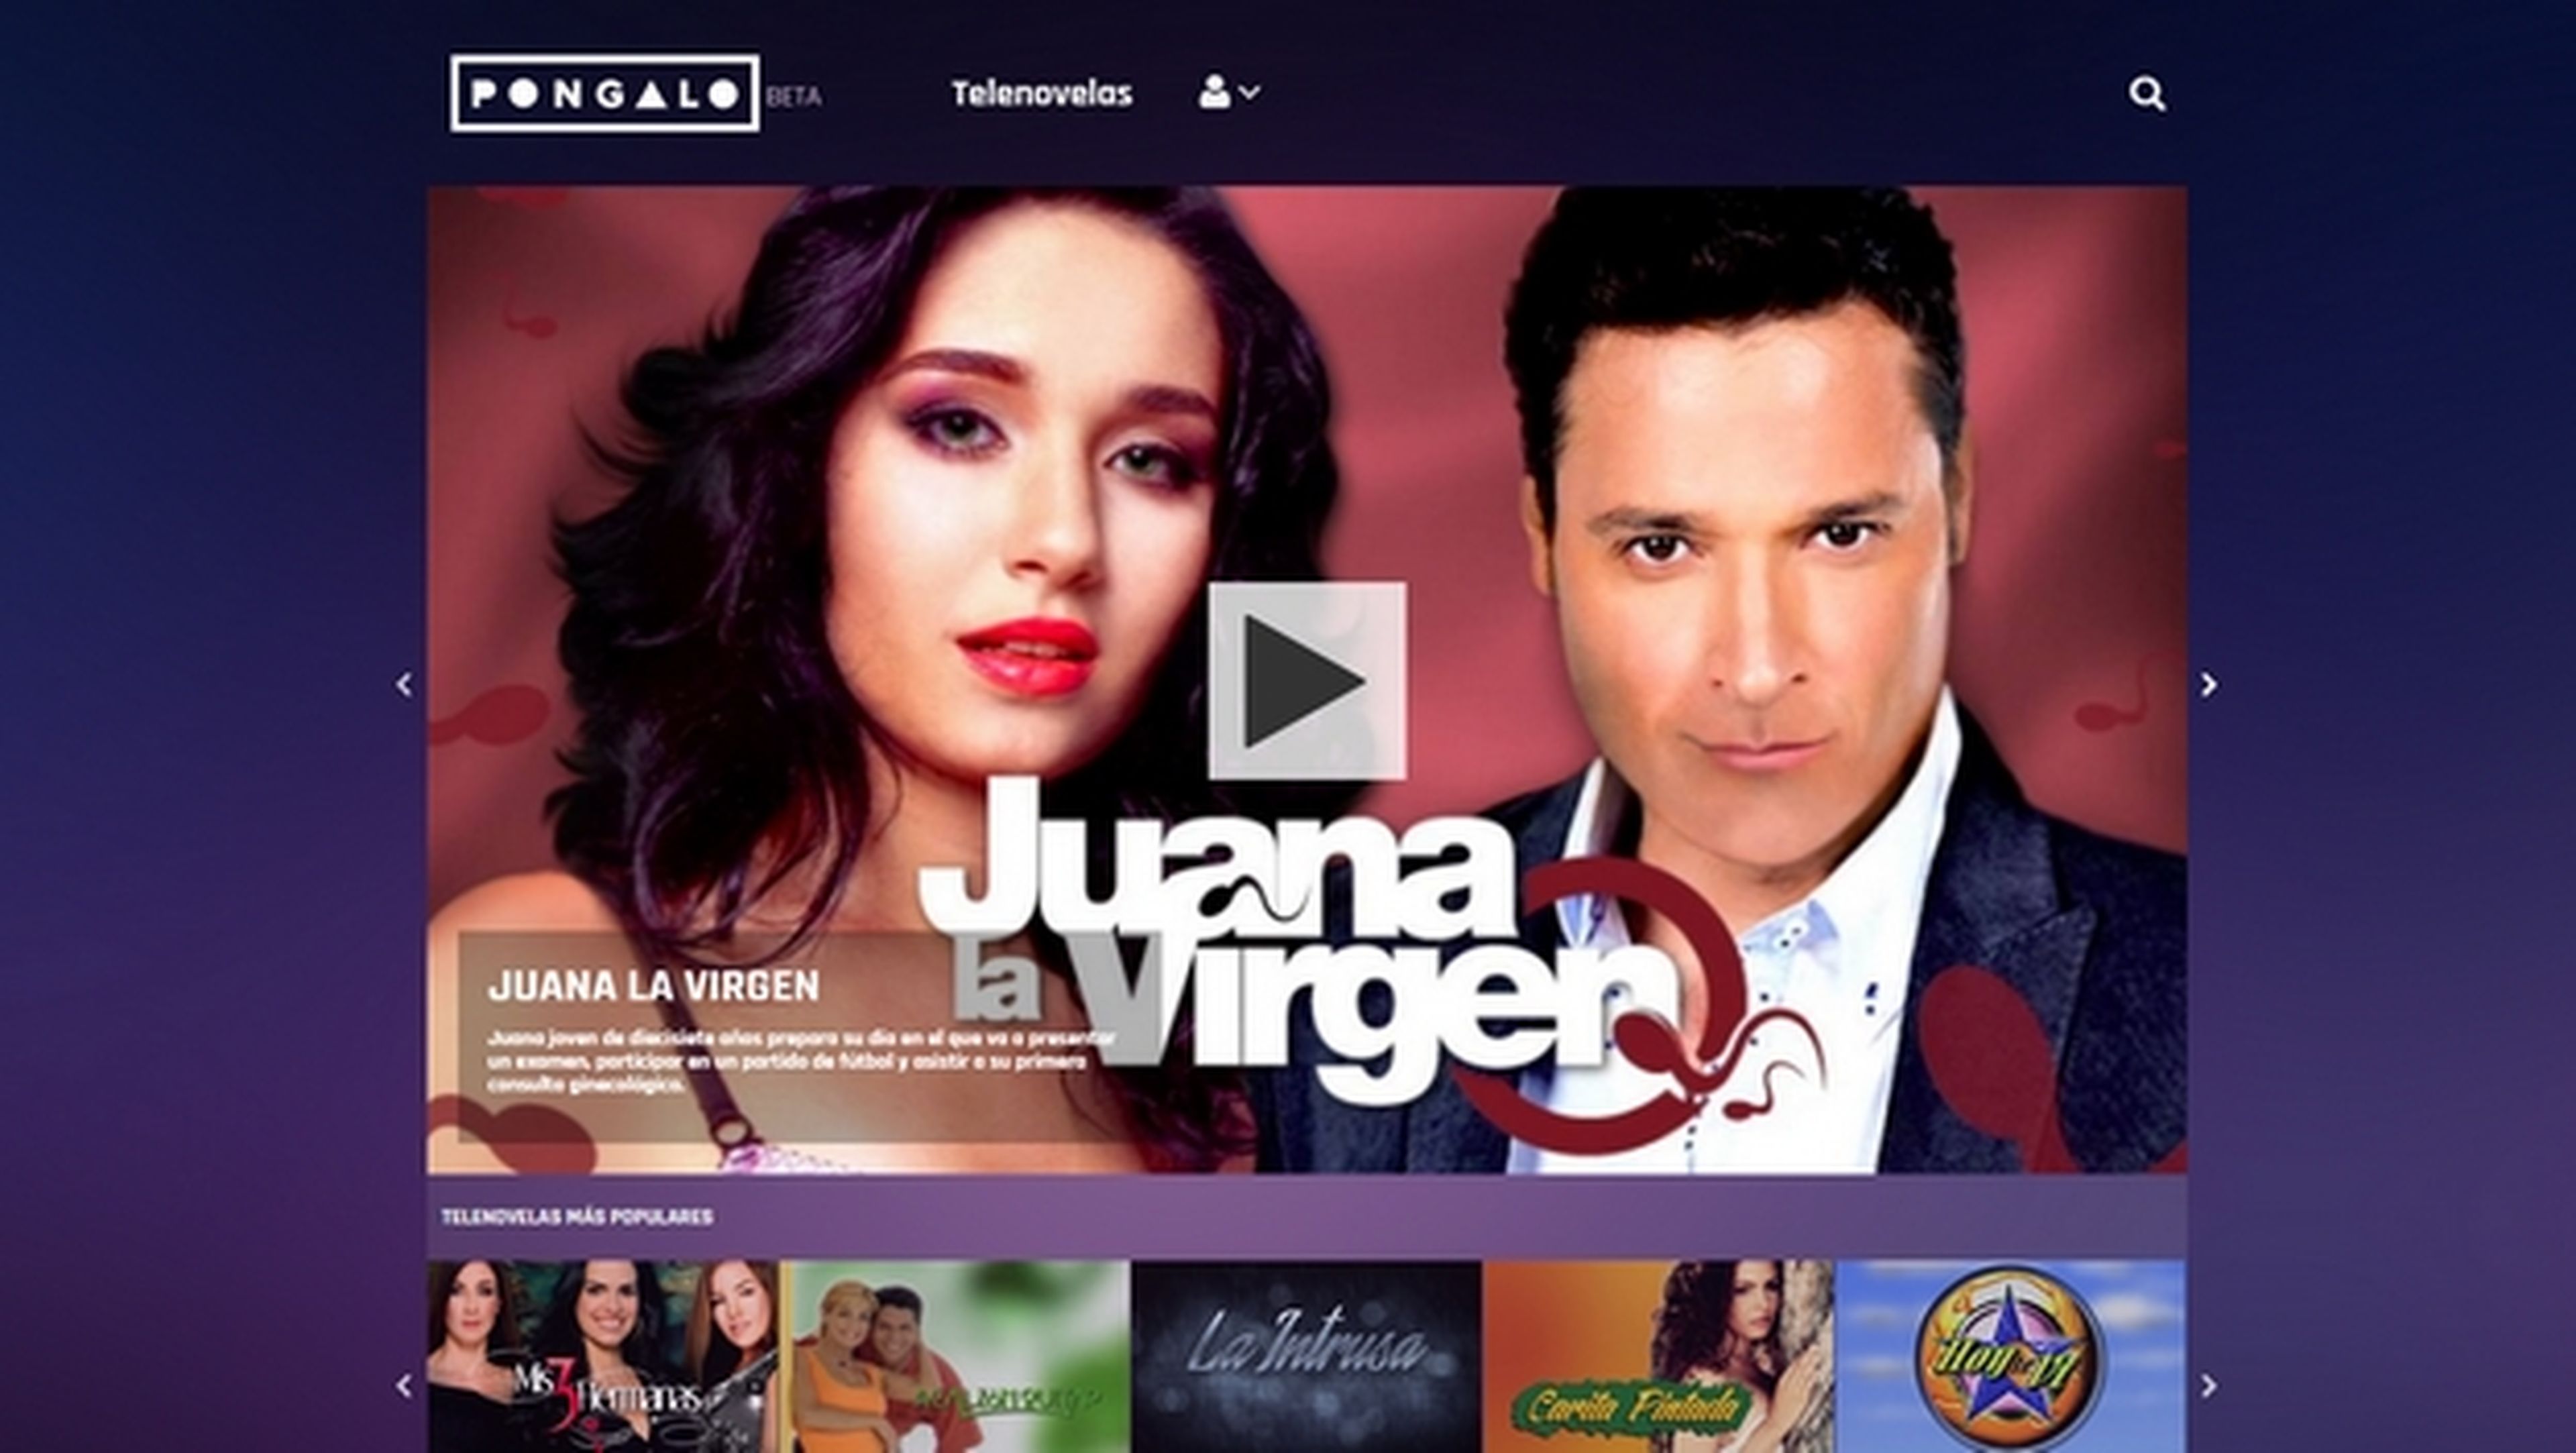 Póngalo te ofrece 10.000 telenovelas en streaming, ¡gratis!